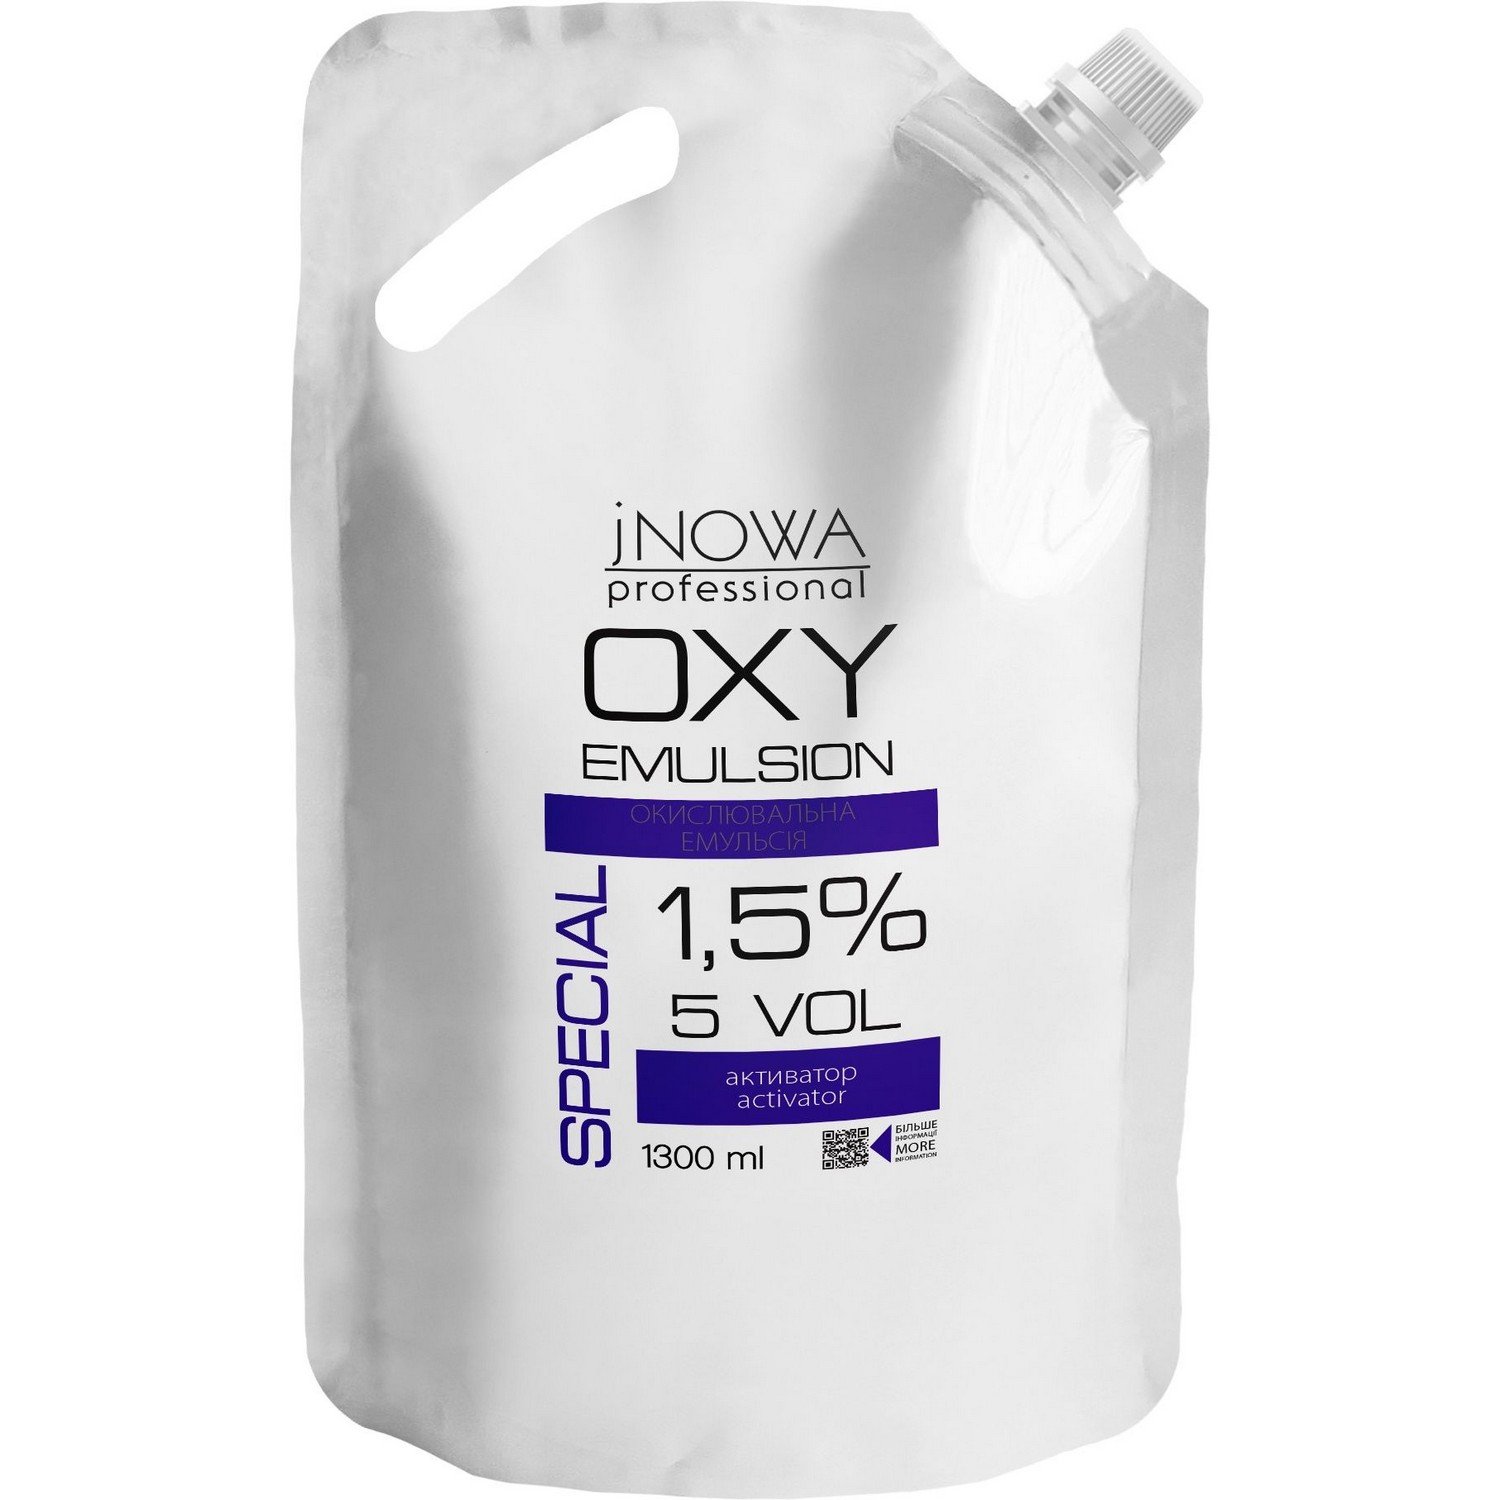 Окислительная эмульсия jNOWA Professional Special OXY 1,5%, 5 vol, 1300 мл - фото 1